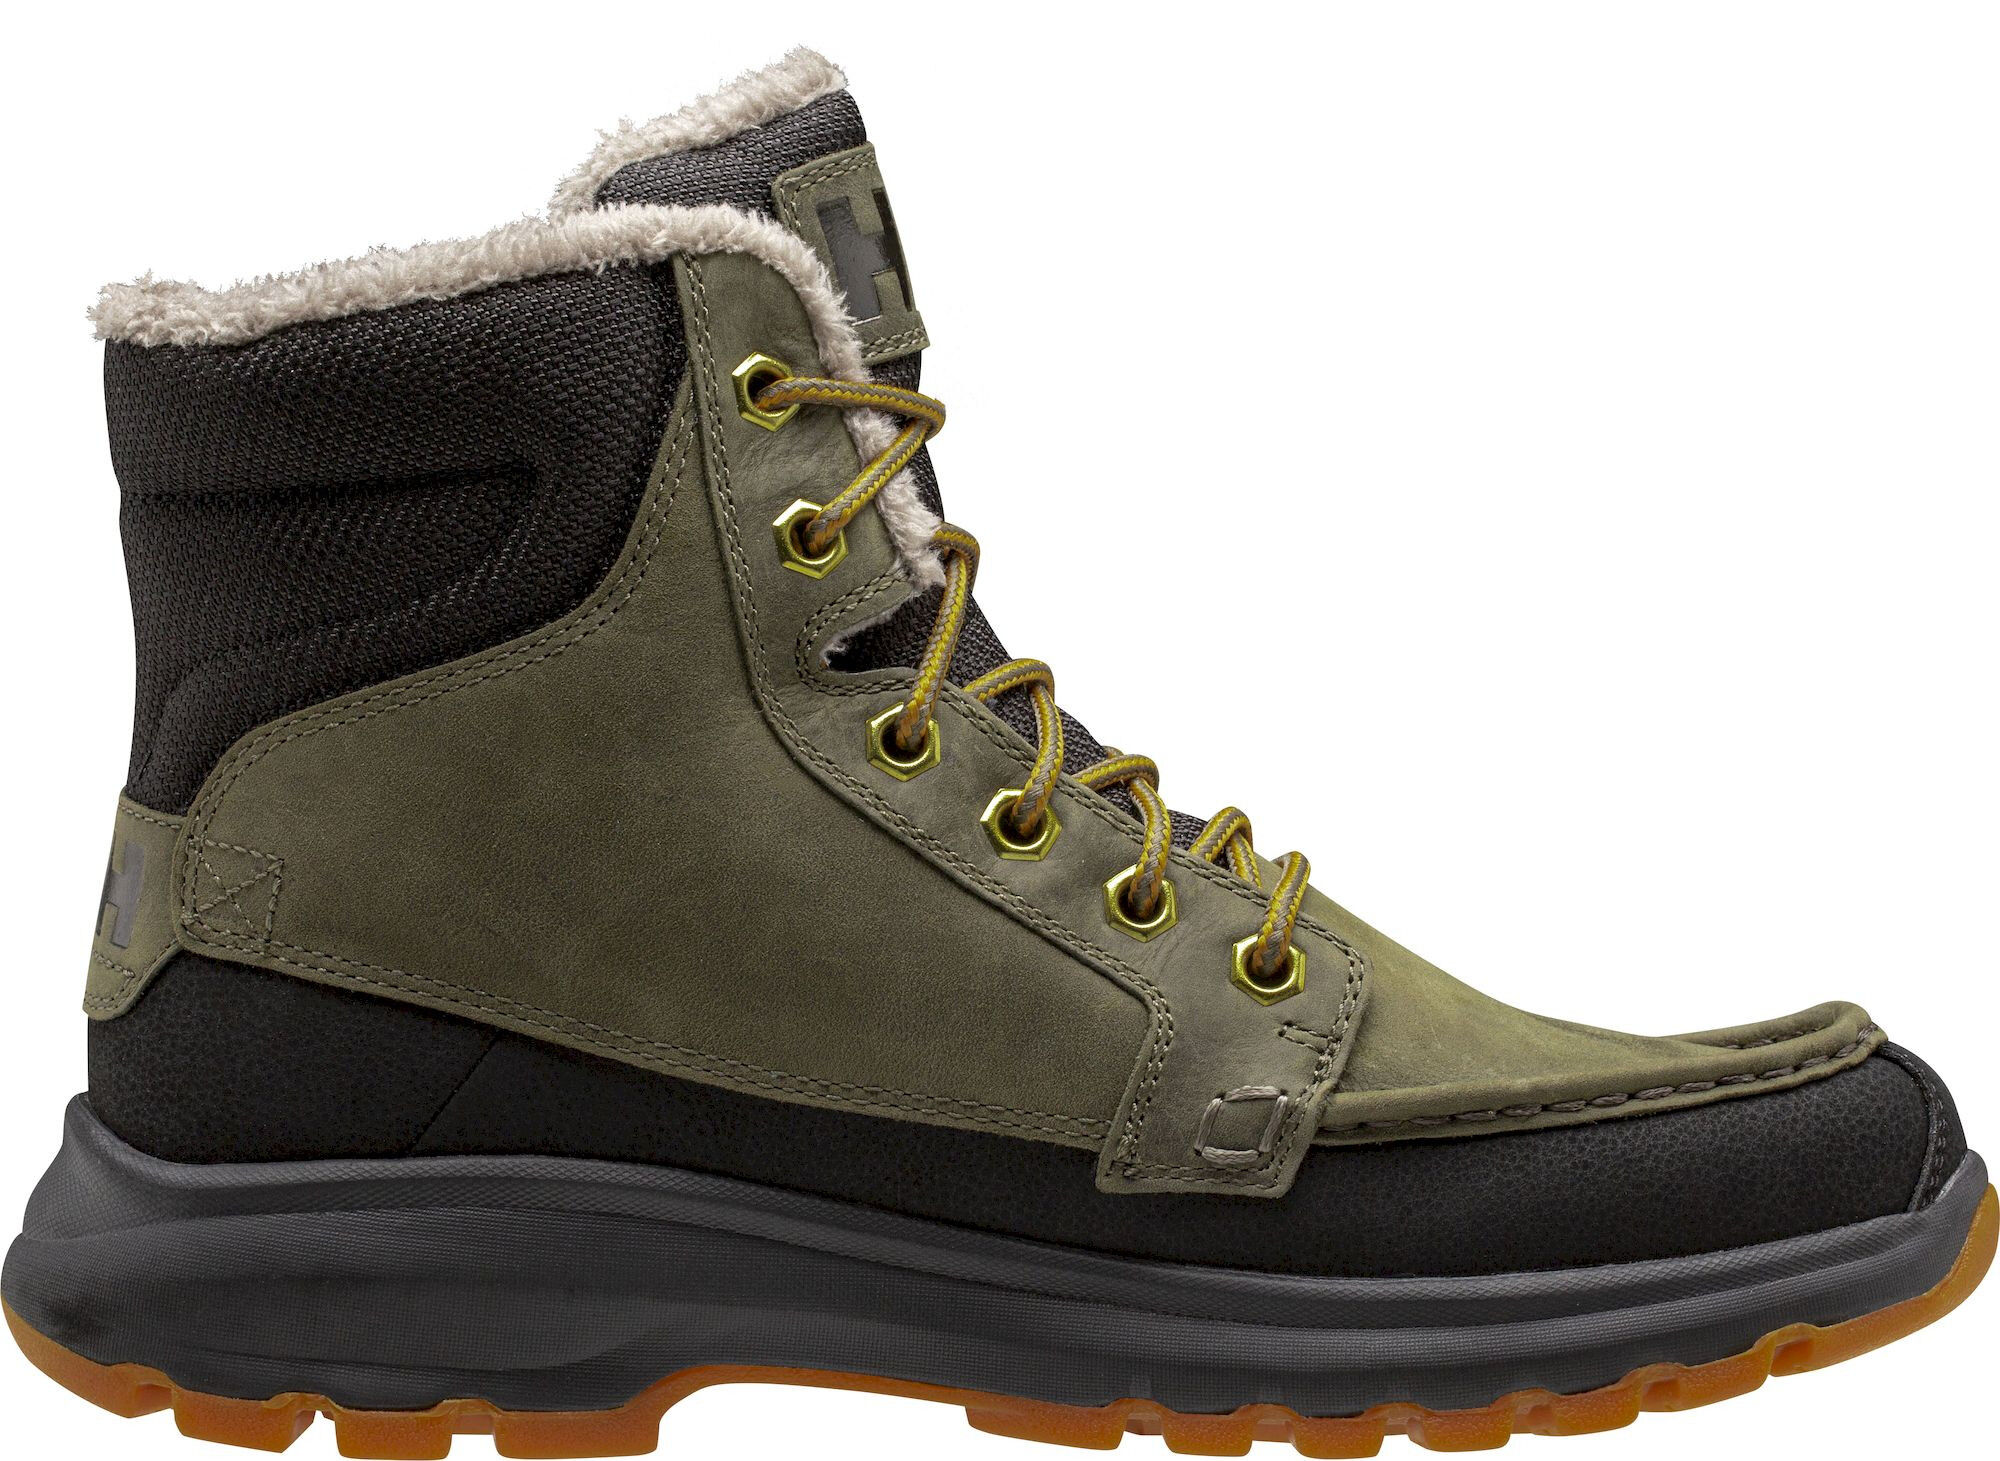 Helly Hansen Garibaldi V3 - Boots - Men's